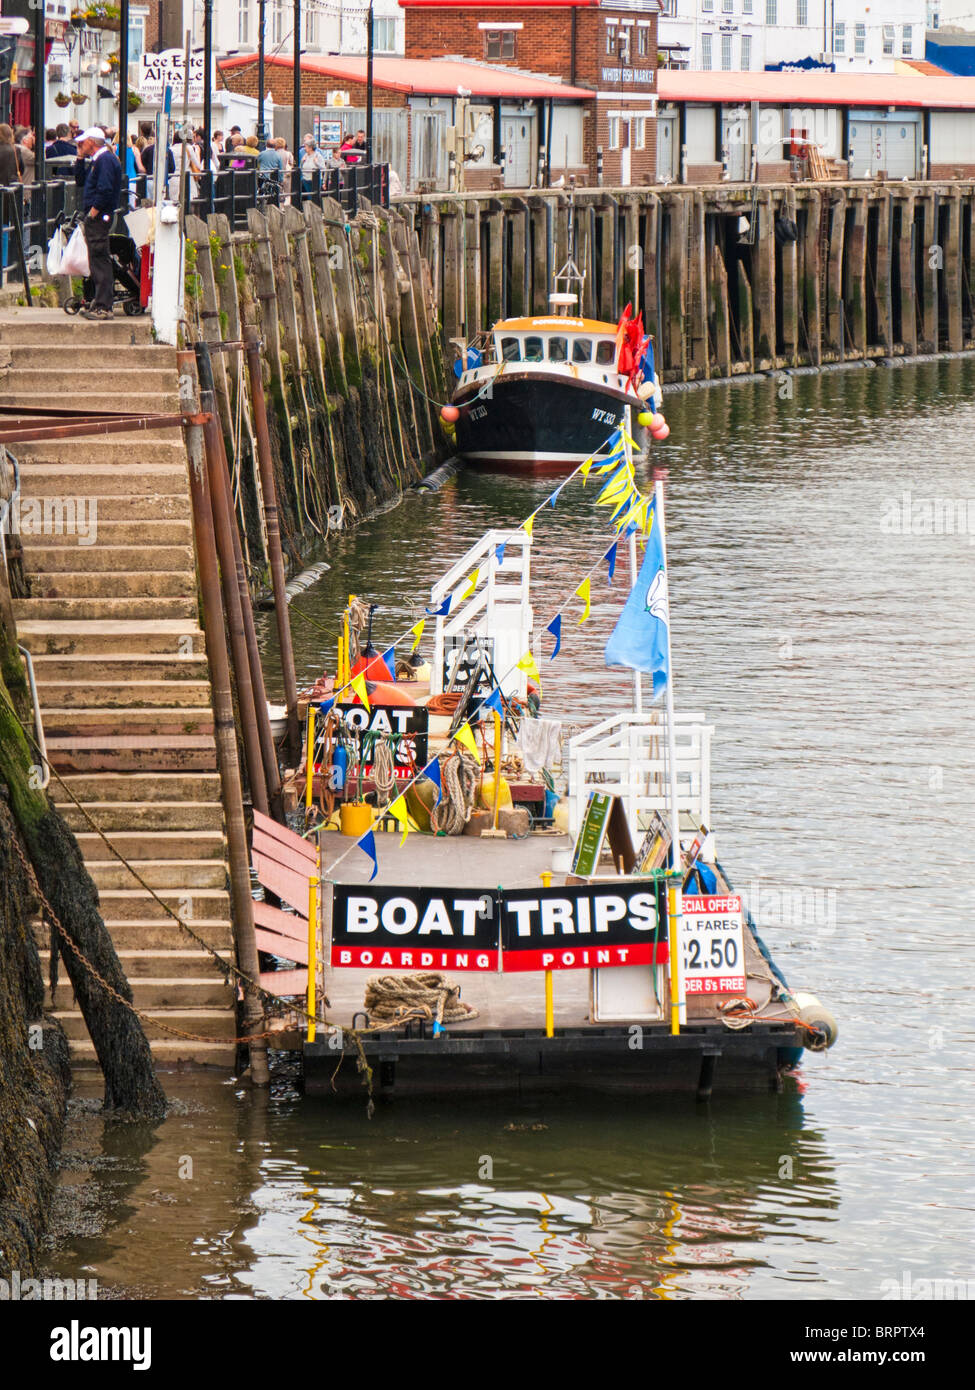 Point d'embarquement des excursions en bateau sur l'ESK à Whitby, North Yorkshire Angleterre UK Banque D'Images